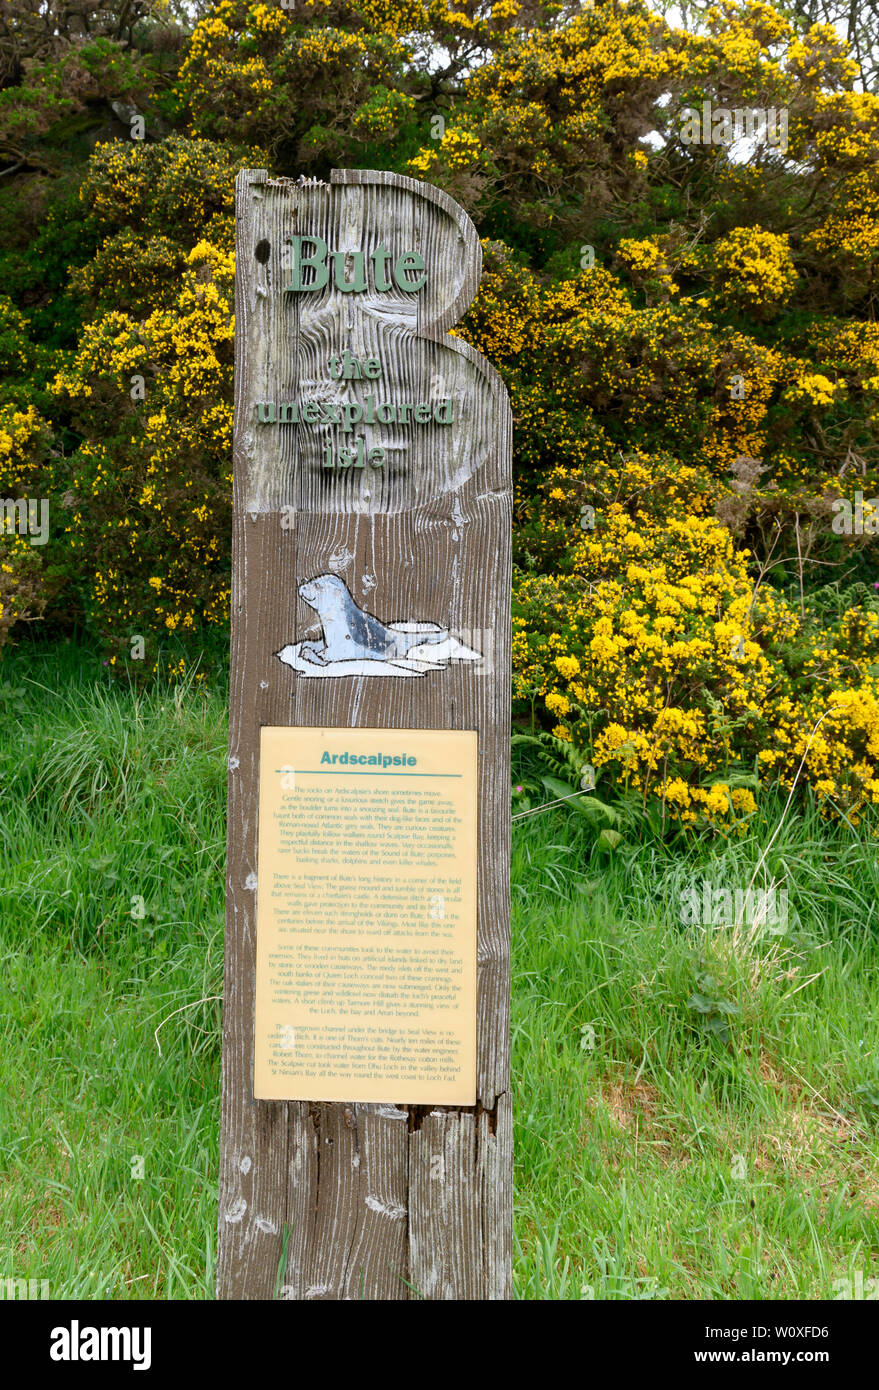 Schild am Aussichtspunkt an Ardscalpsie, Isle of Bute, Schottland, Großbritannien Stockfoto